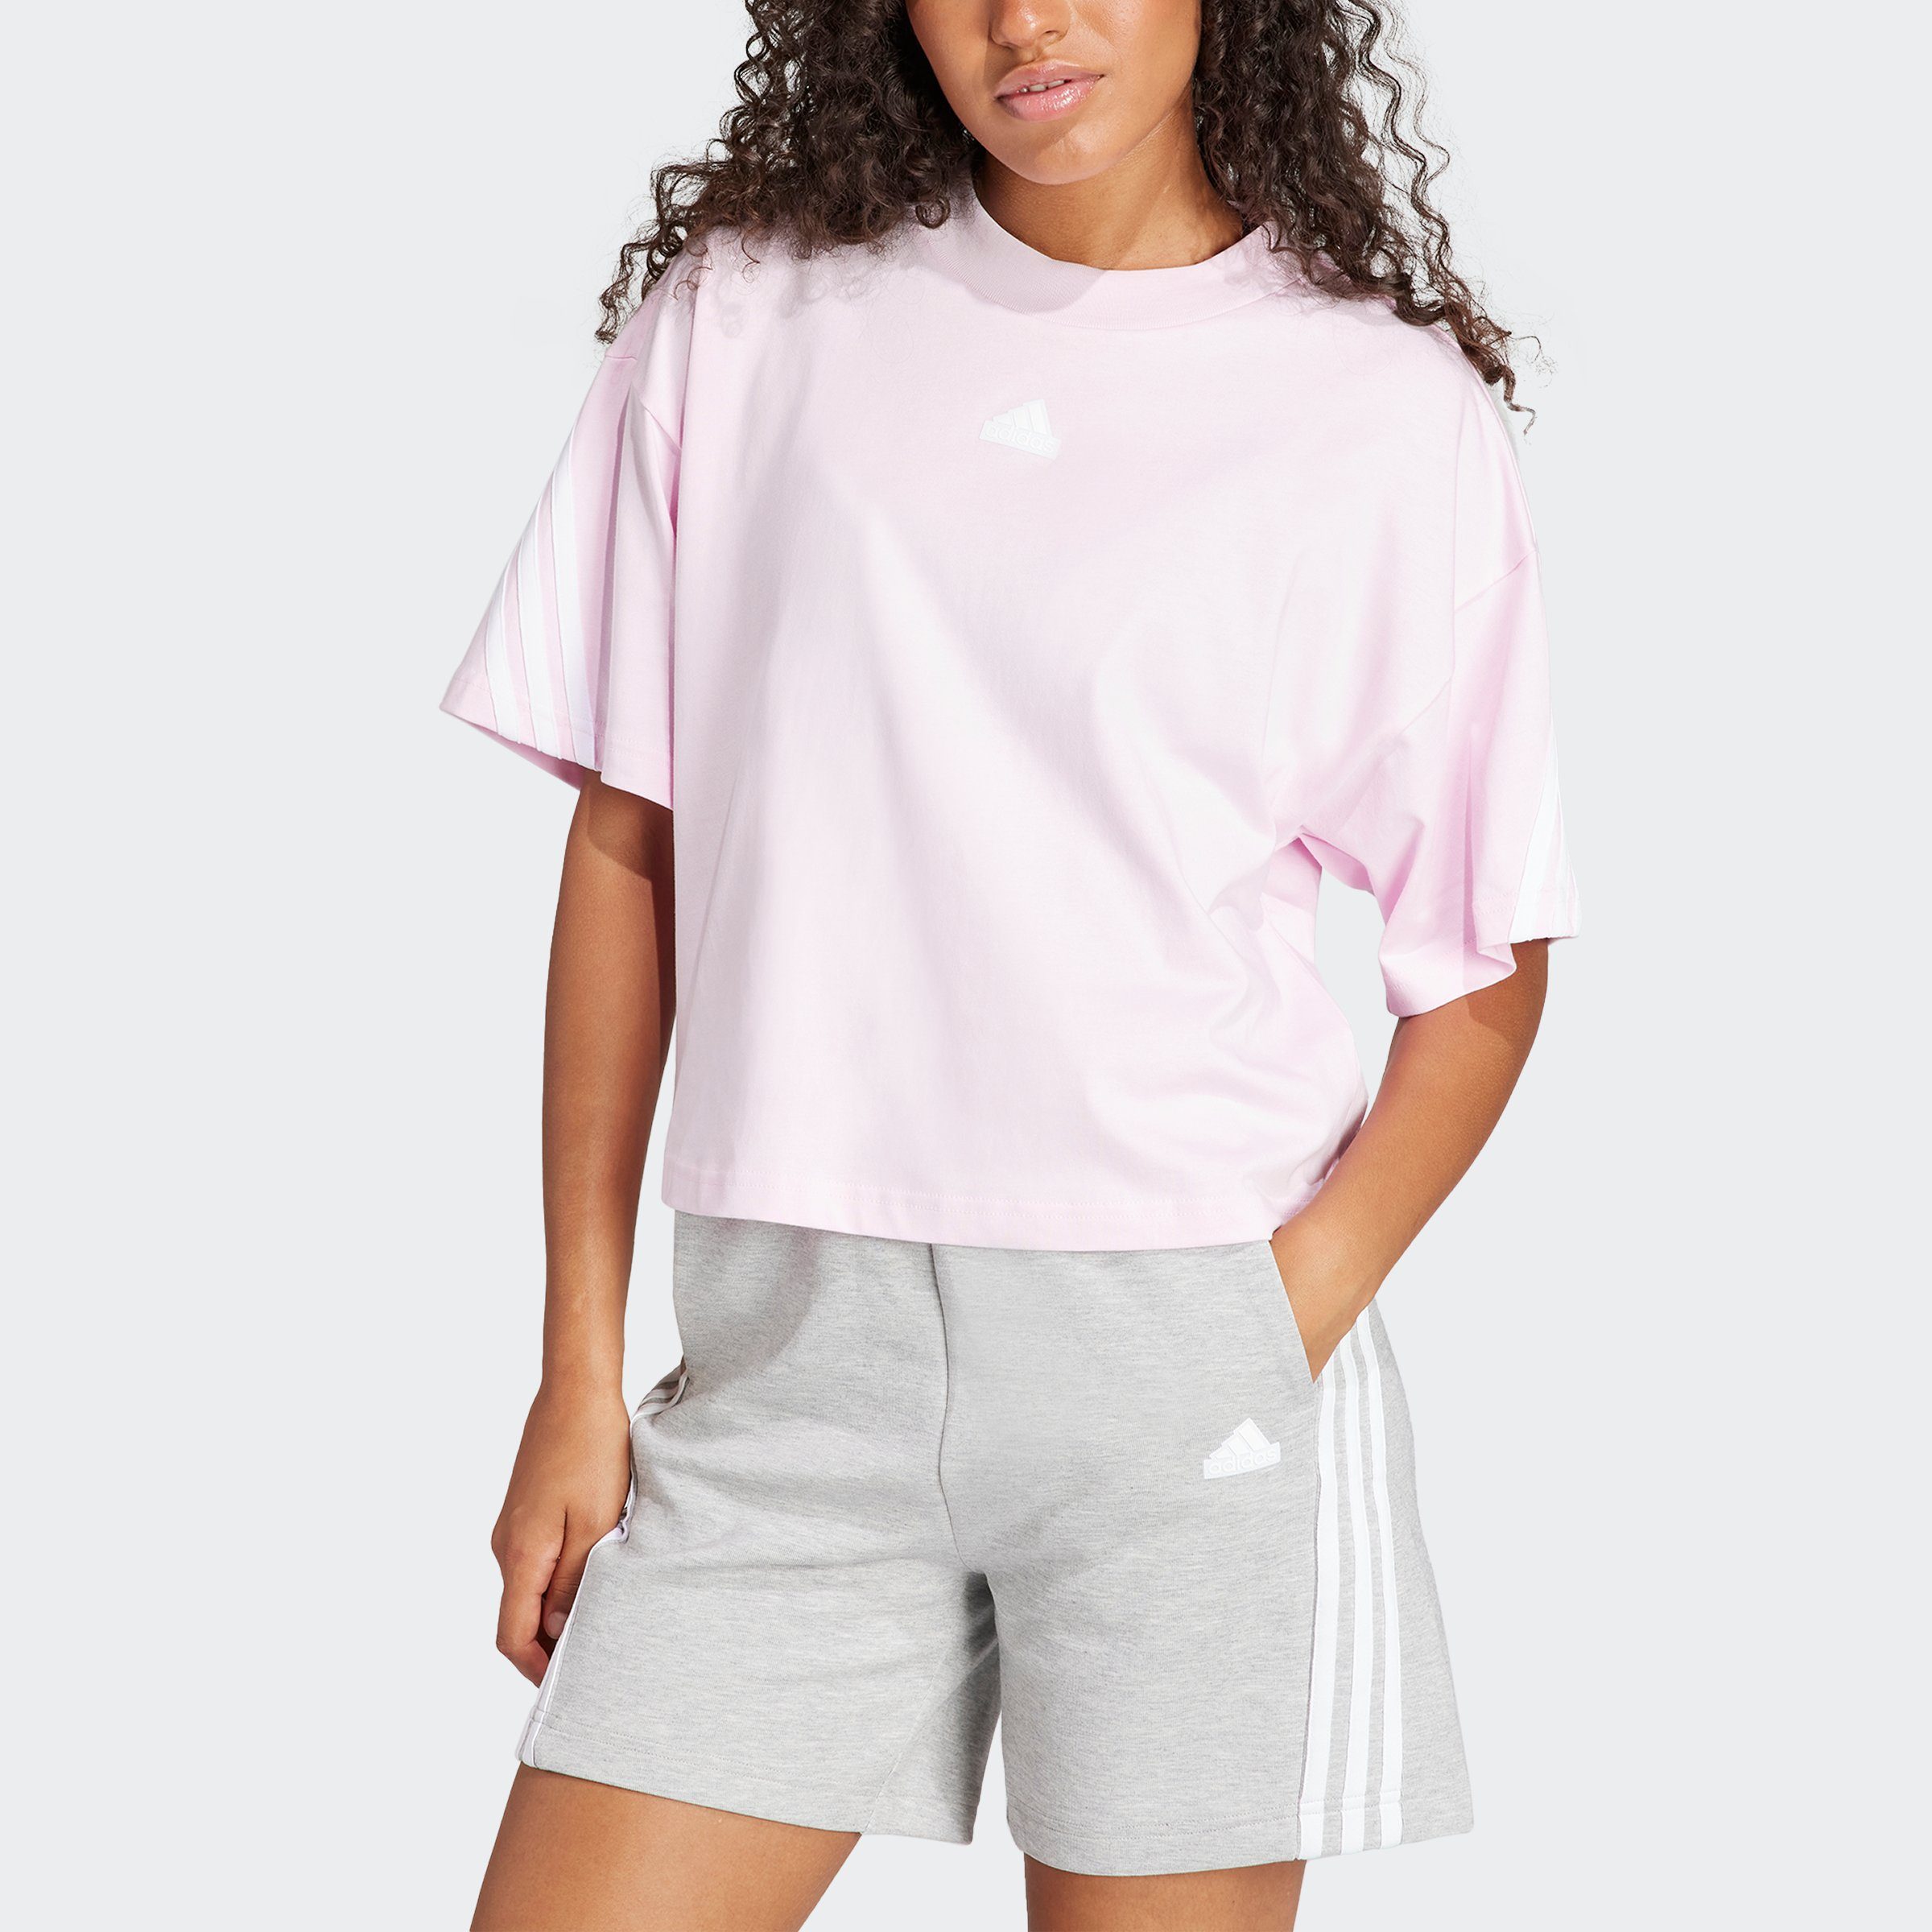 TEE CLPINK FI T-Shirt 3S Sportswear adidas W